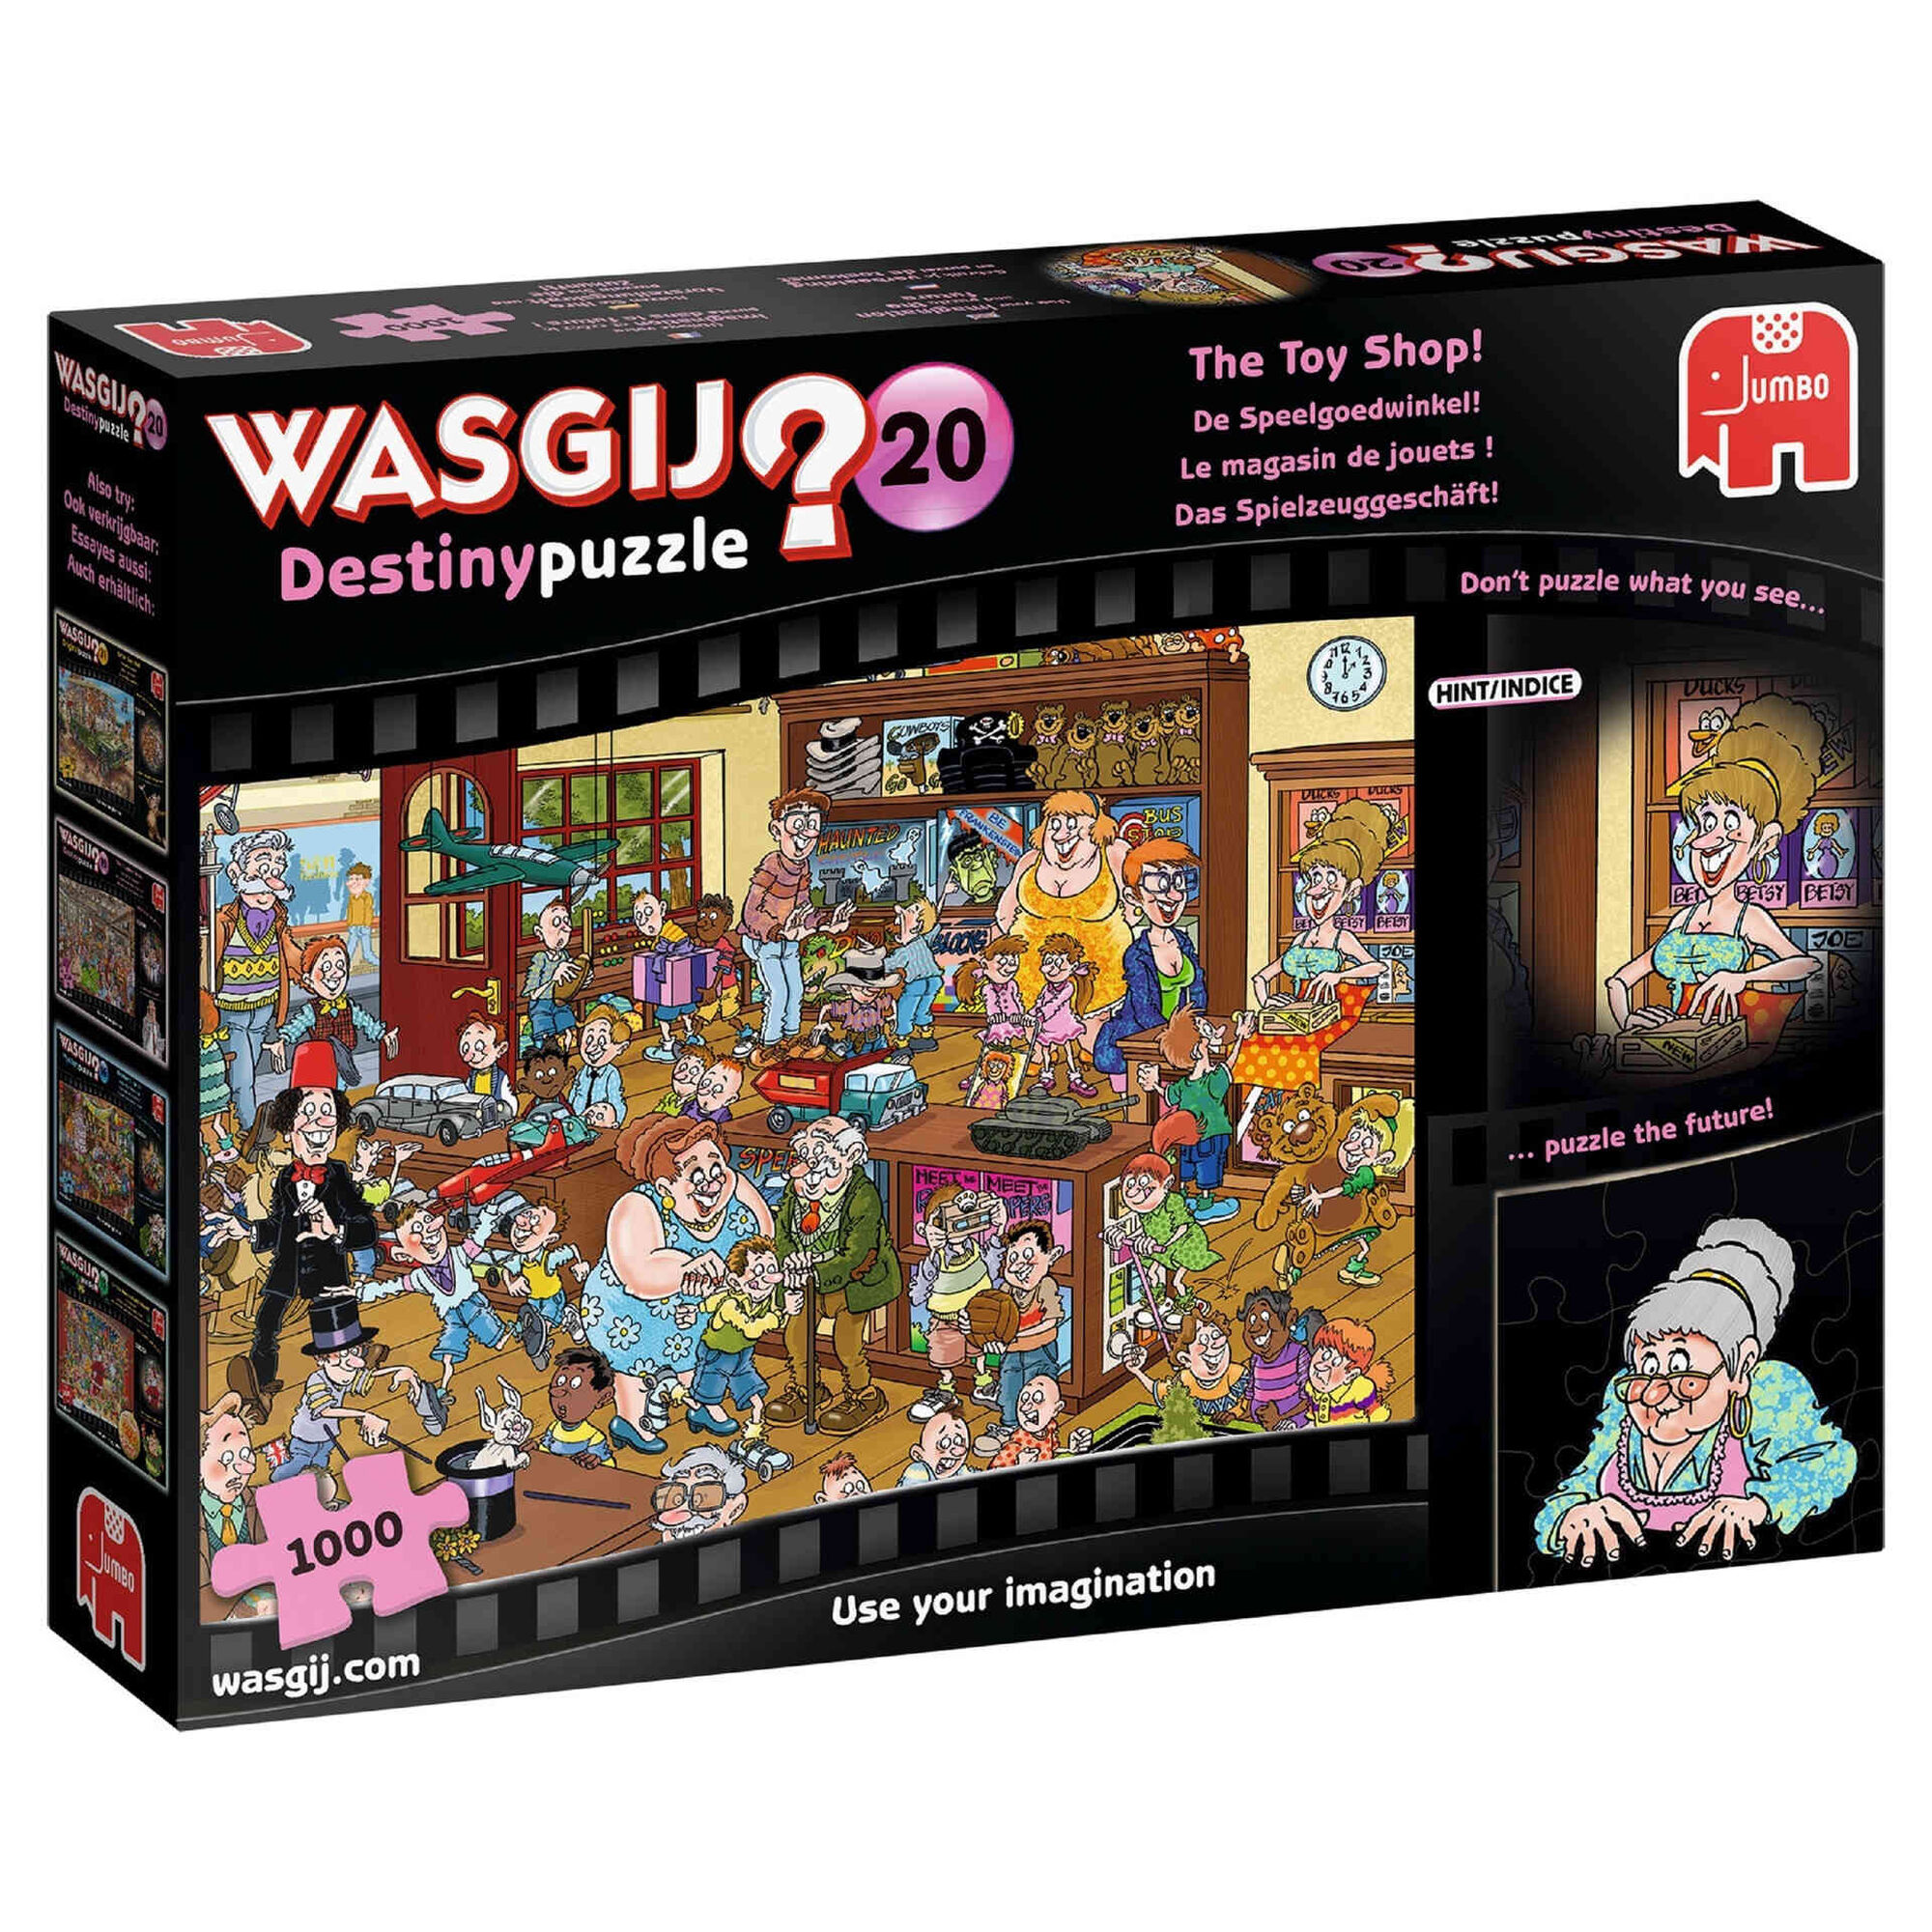 Puzzle Wasgij Destiny 20 - The Toy Shop (1000 Peças)